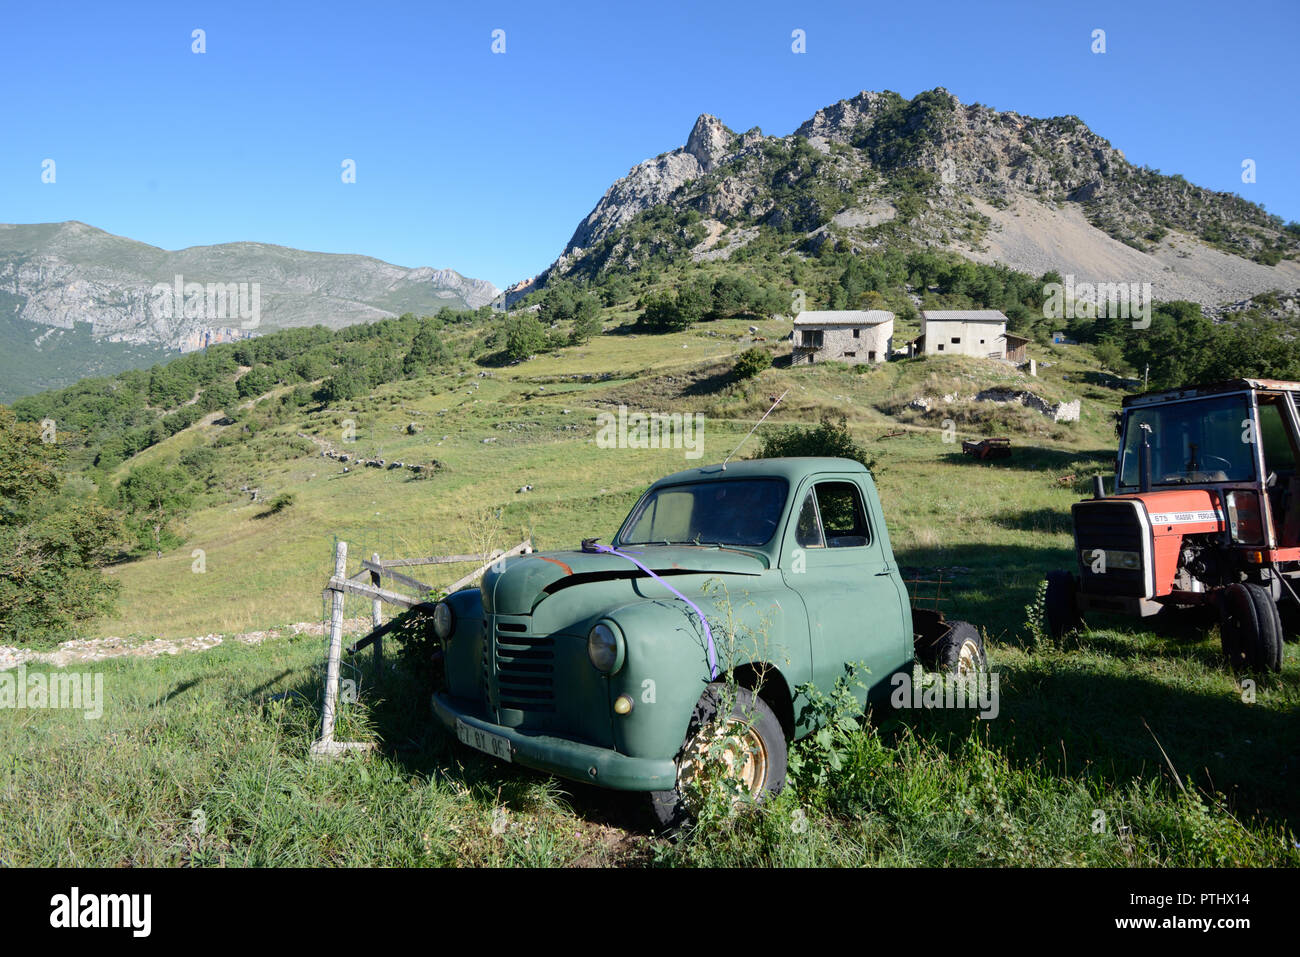 Abandonné Vintage Peugeot 203 pick up Truck (1948-1960) & 675 Tracteur Massey Ferguson sur Hill Farm à Taloire dans les gorges du Verdon Alpes France Banque D'Images